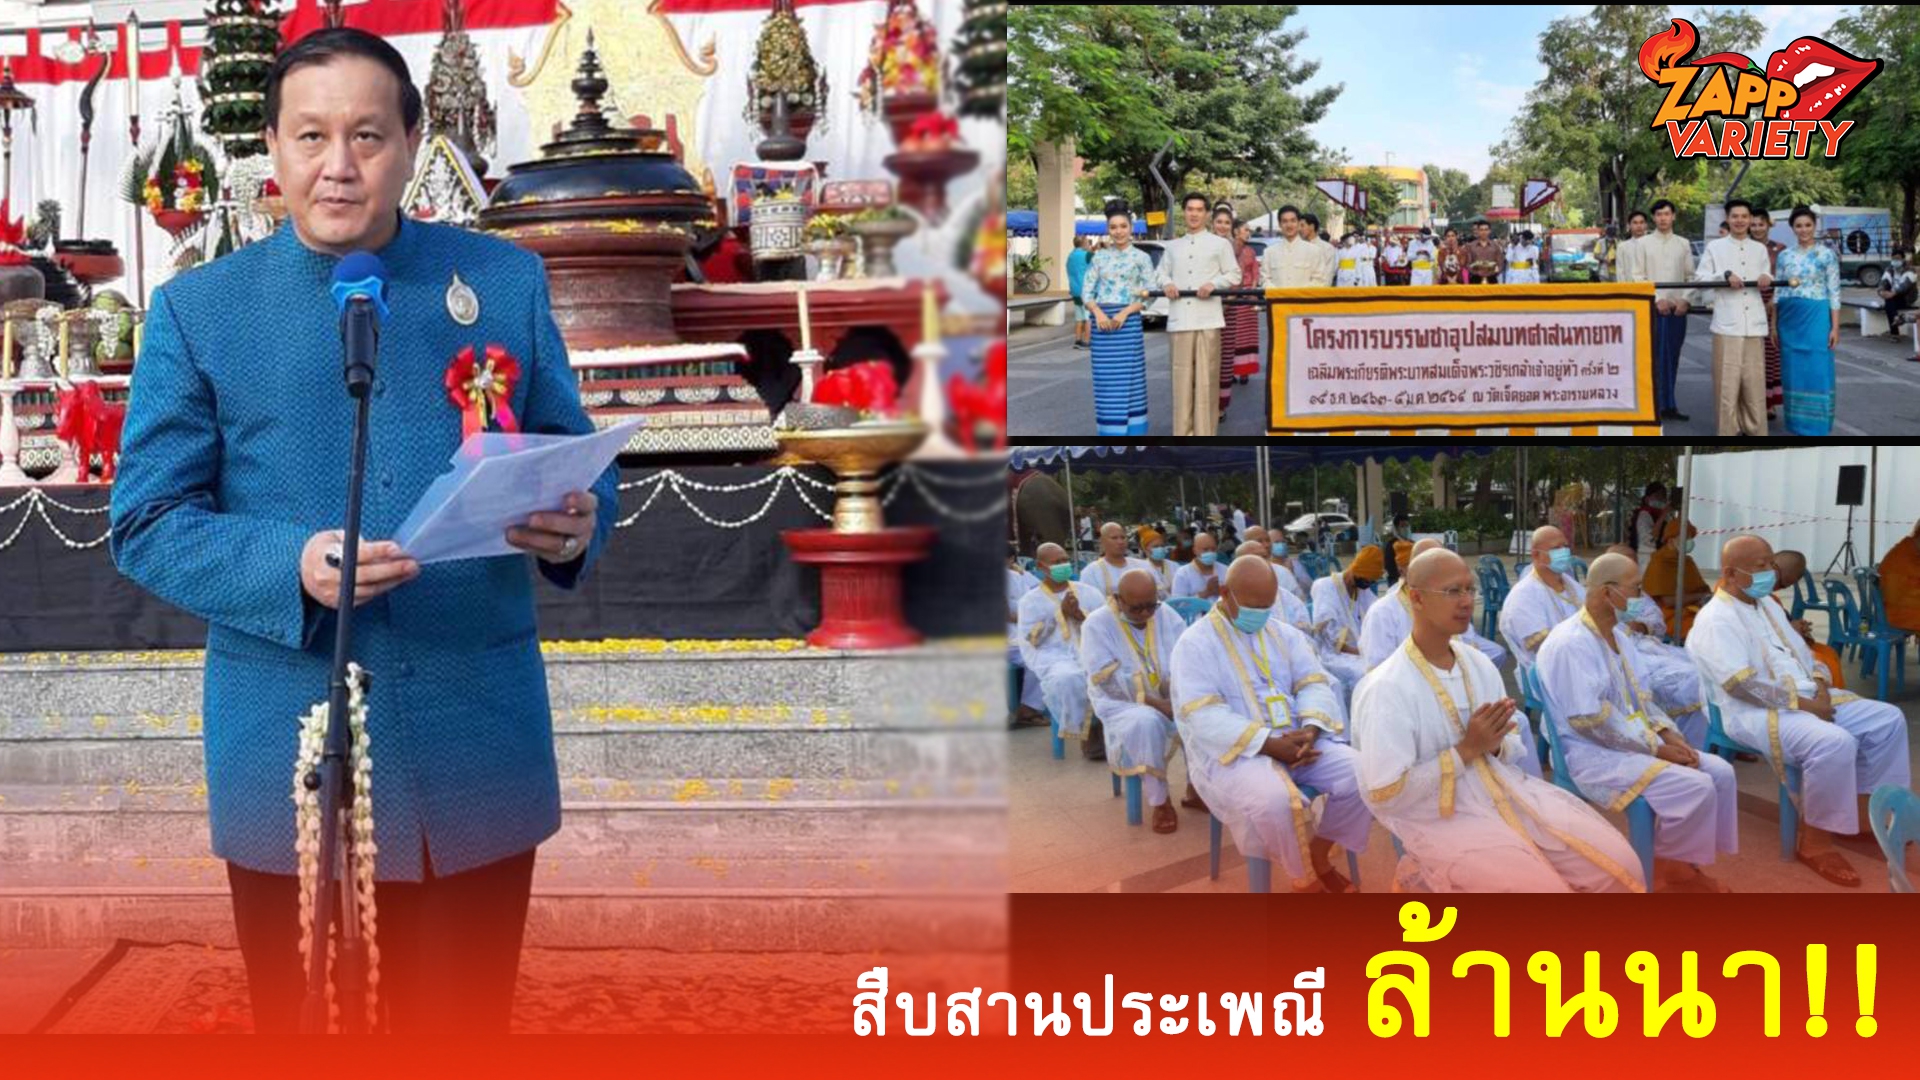 สืบสานประเพณีล้านนา!! ผู้การฯคัมภีร์ นำทัพ ประชาชนชาวไทยทุกหมู่เหล่า รวมทั้งเจ้านายฝ่ายเหนือ  ร่วมจัดงาน  